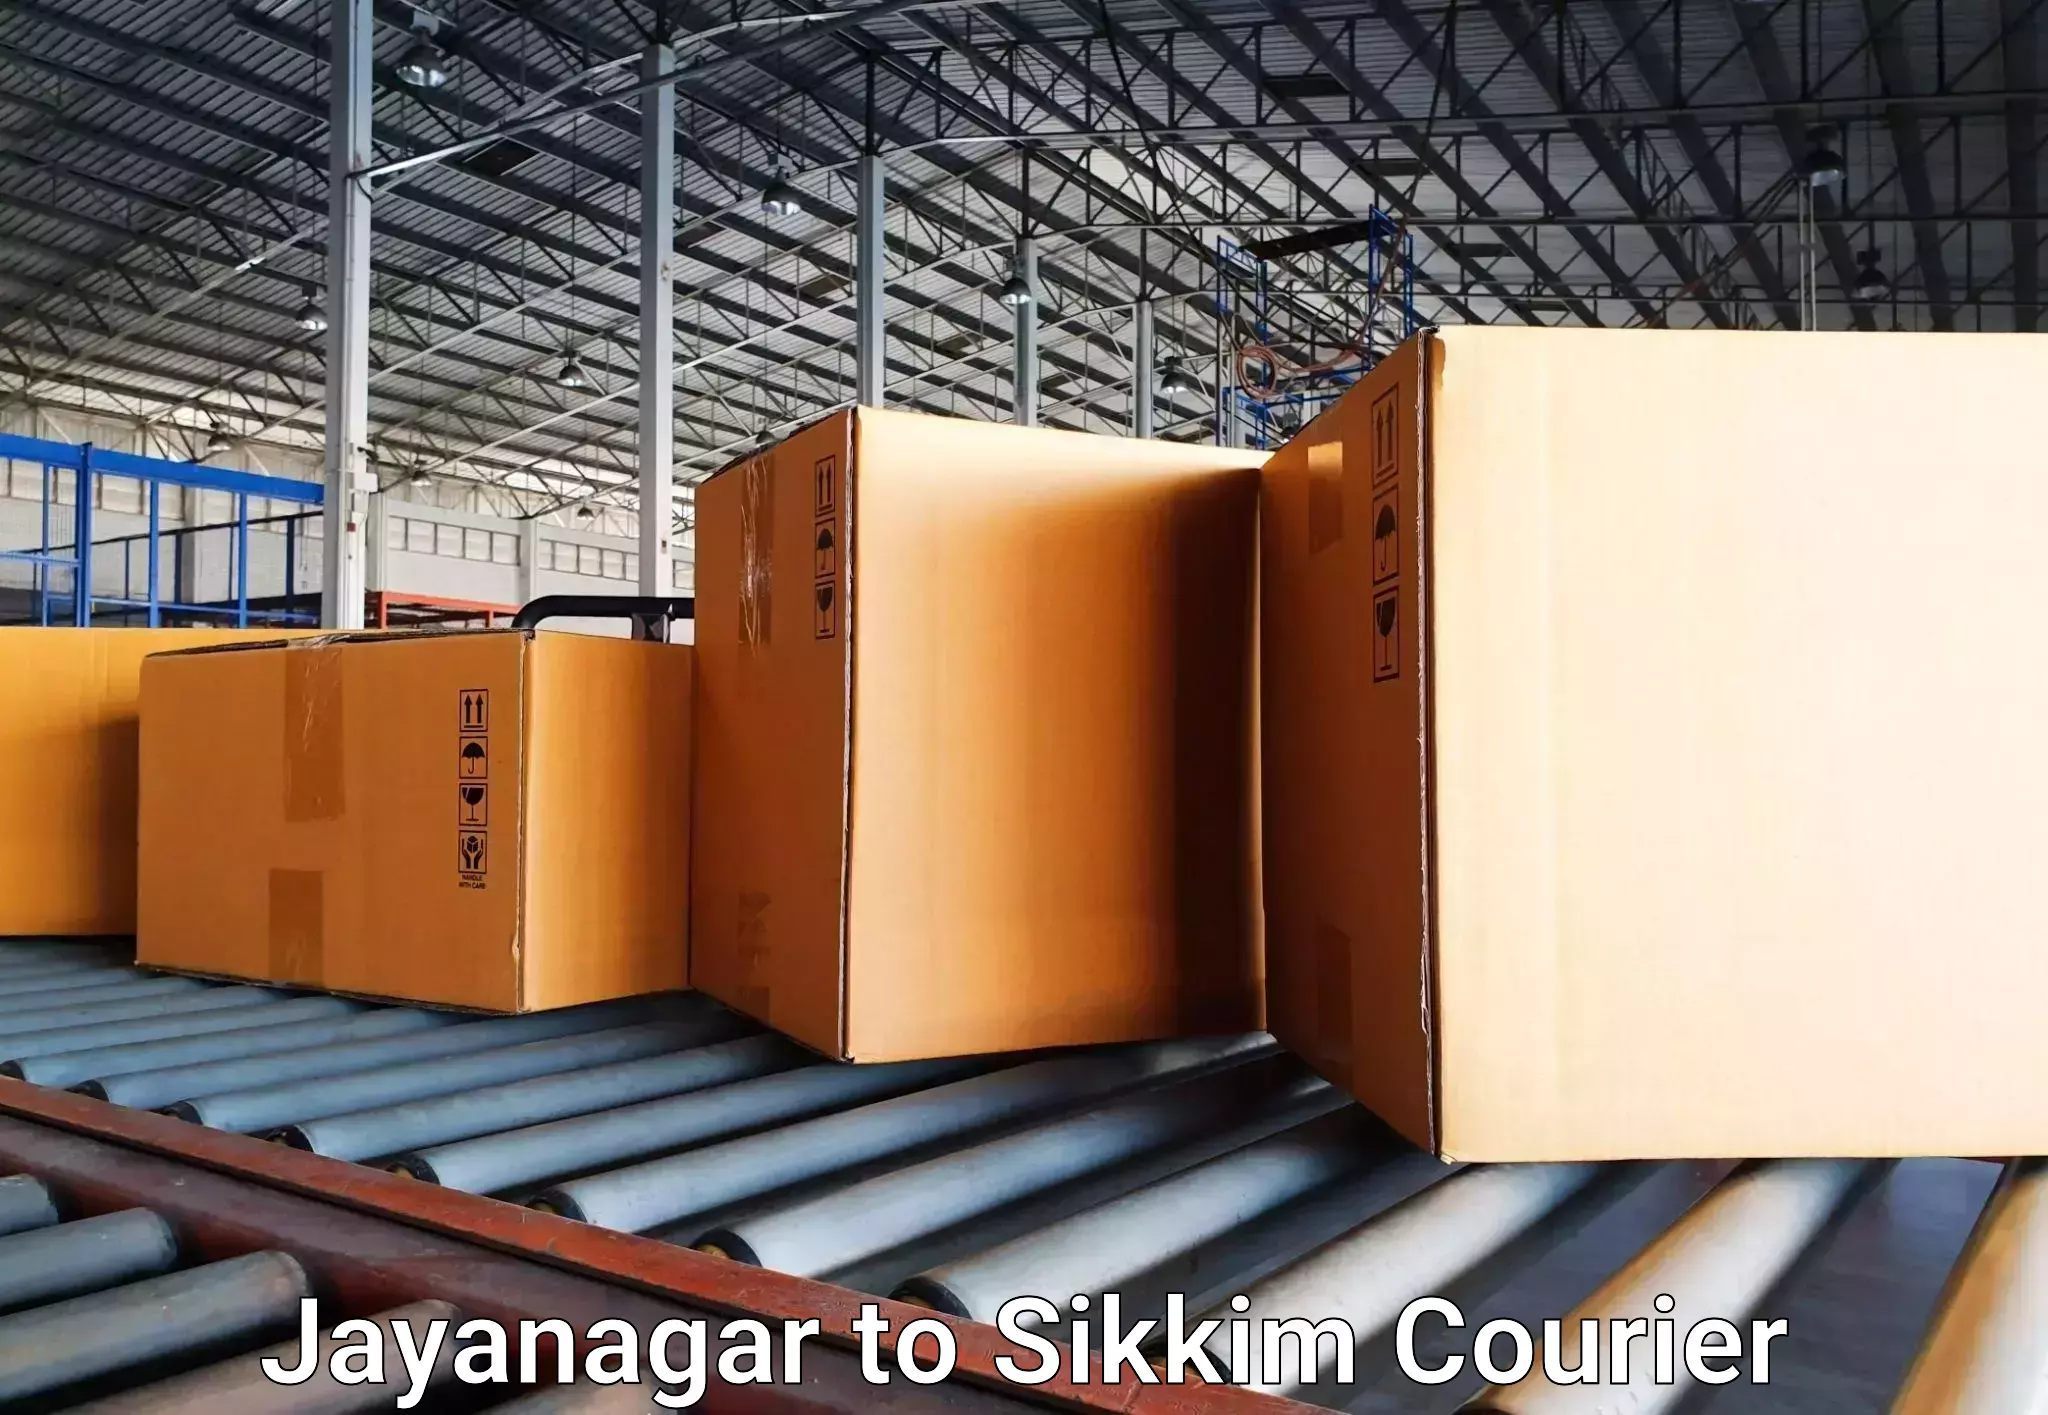 Baggage transport network Jayanagar to Sikkim